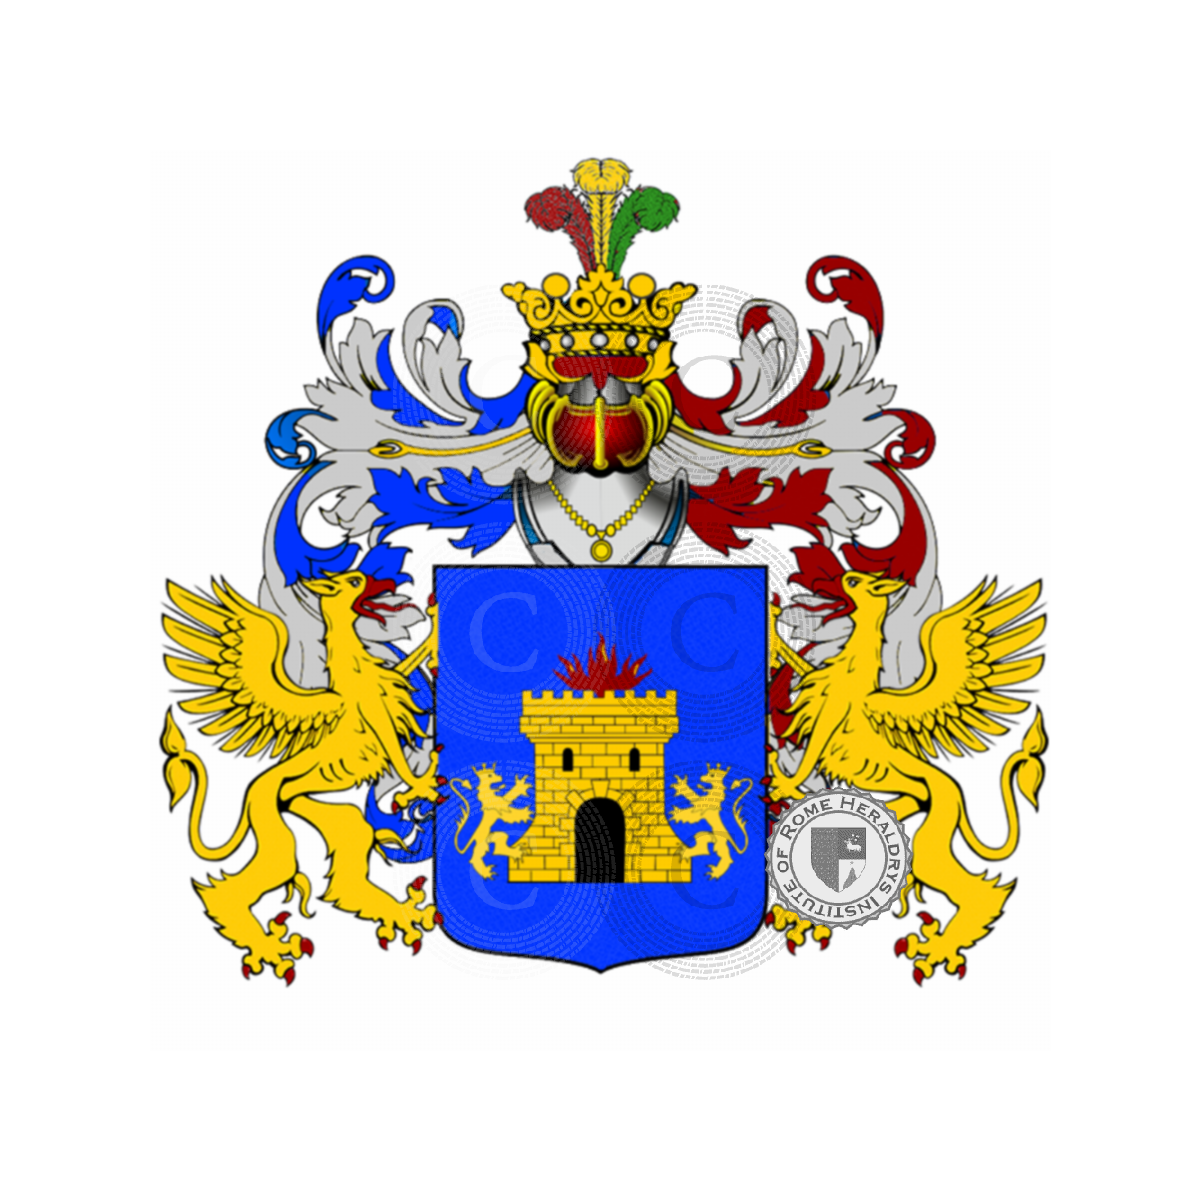 Wappen der Familie Galmonte